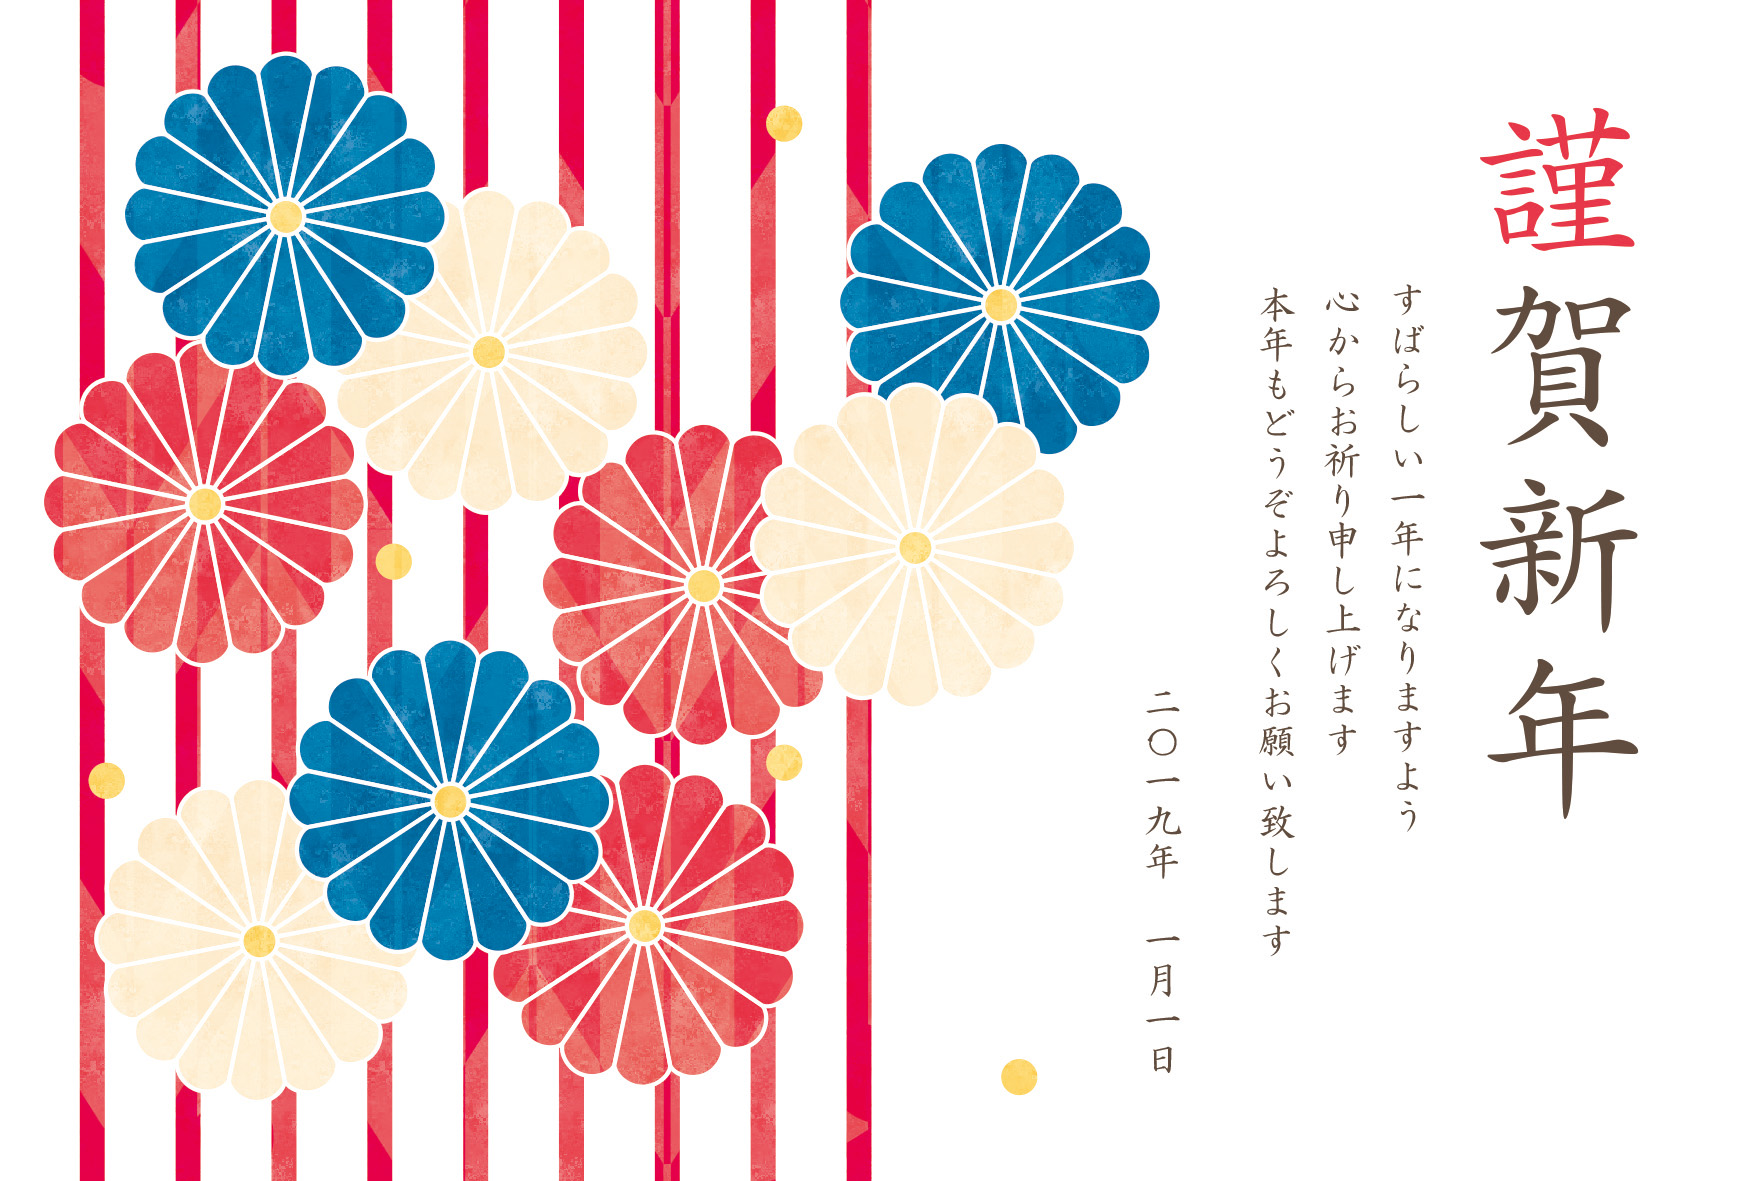 年賀状 亥年 三色の菊の花とストライプ柄のデザイン 年賀状19無料イラスト素材集